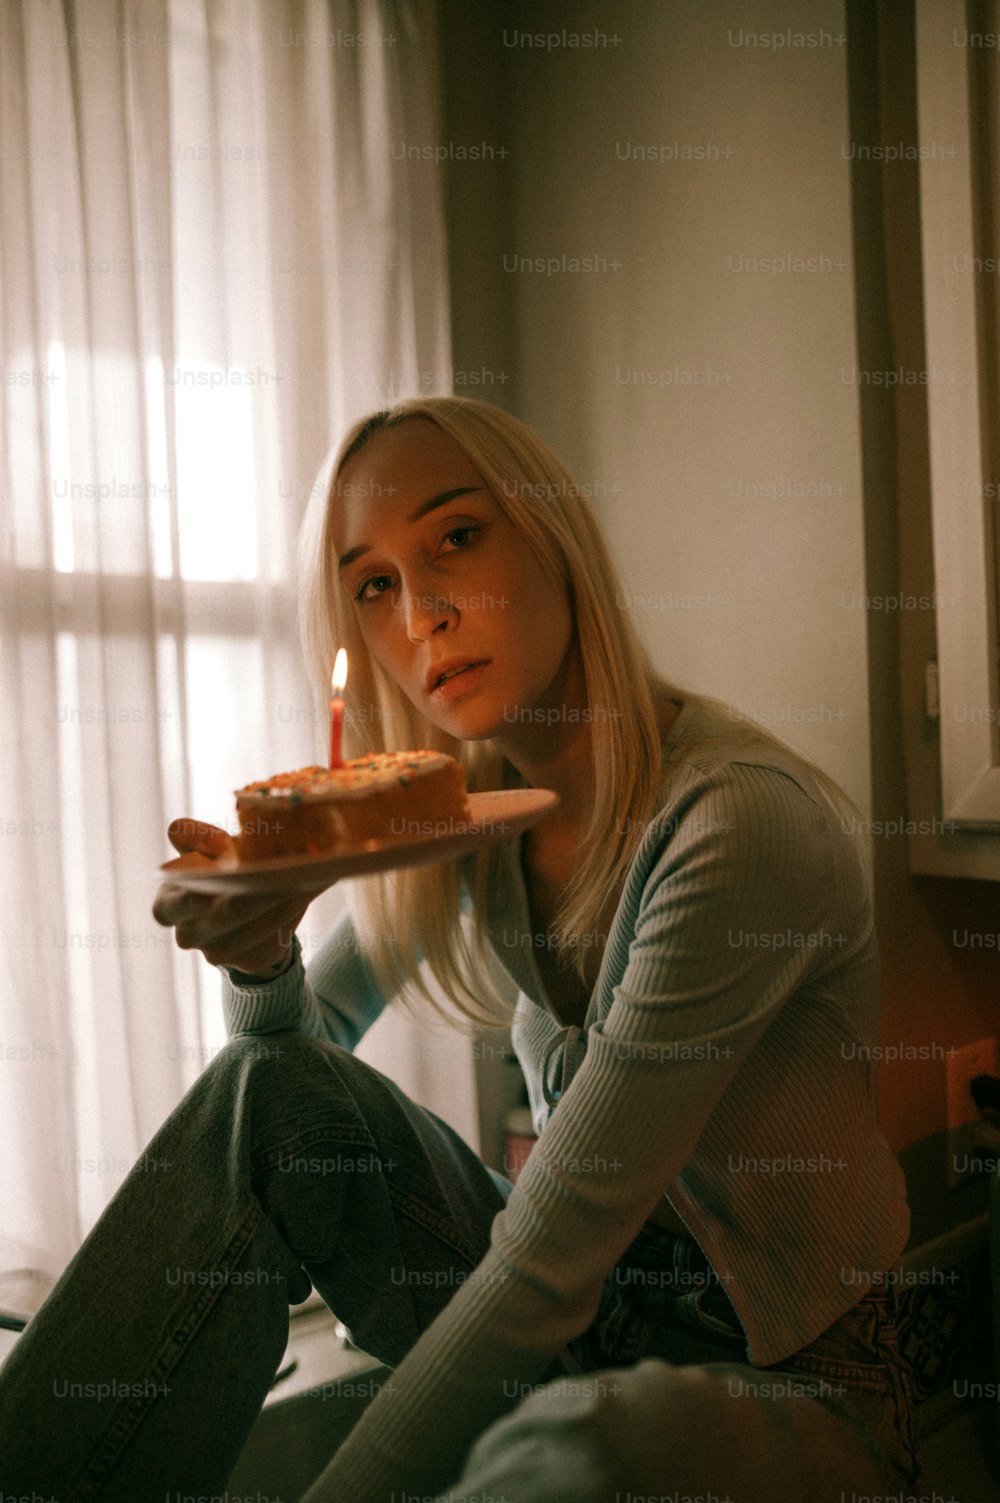 Una mujer sentada en una cama sosteniendo un pedazo de pastel